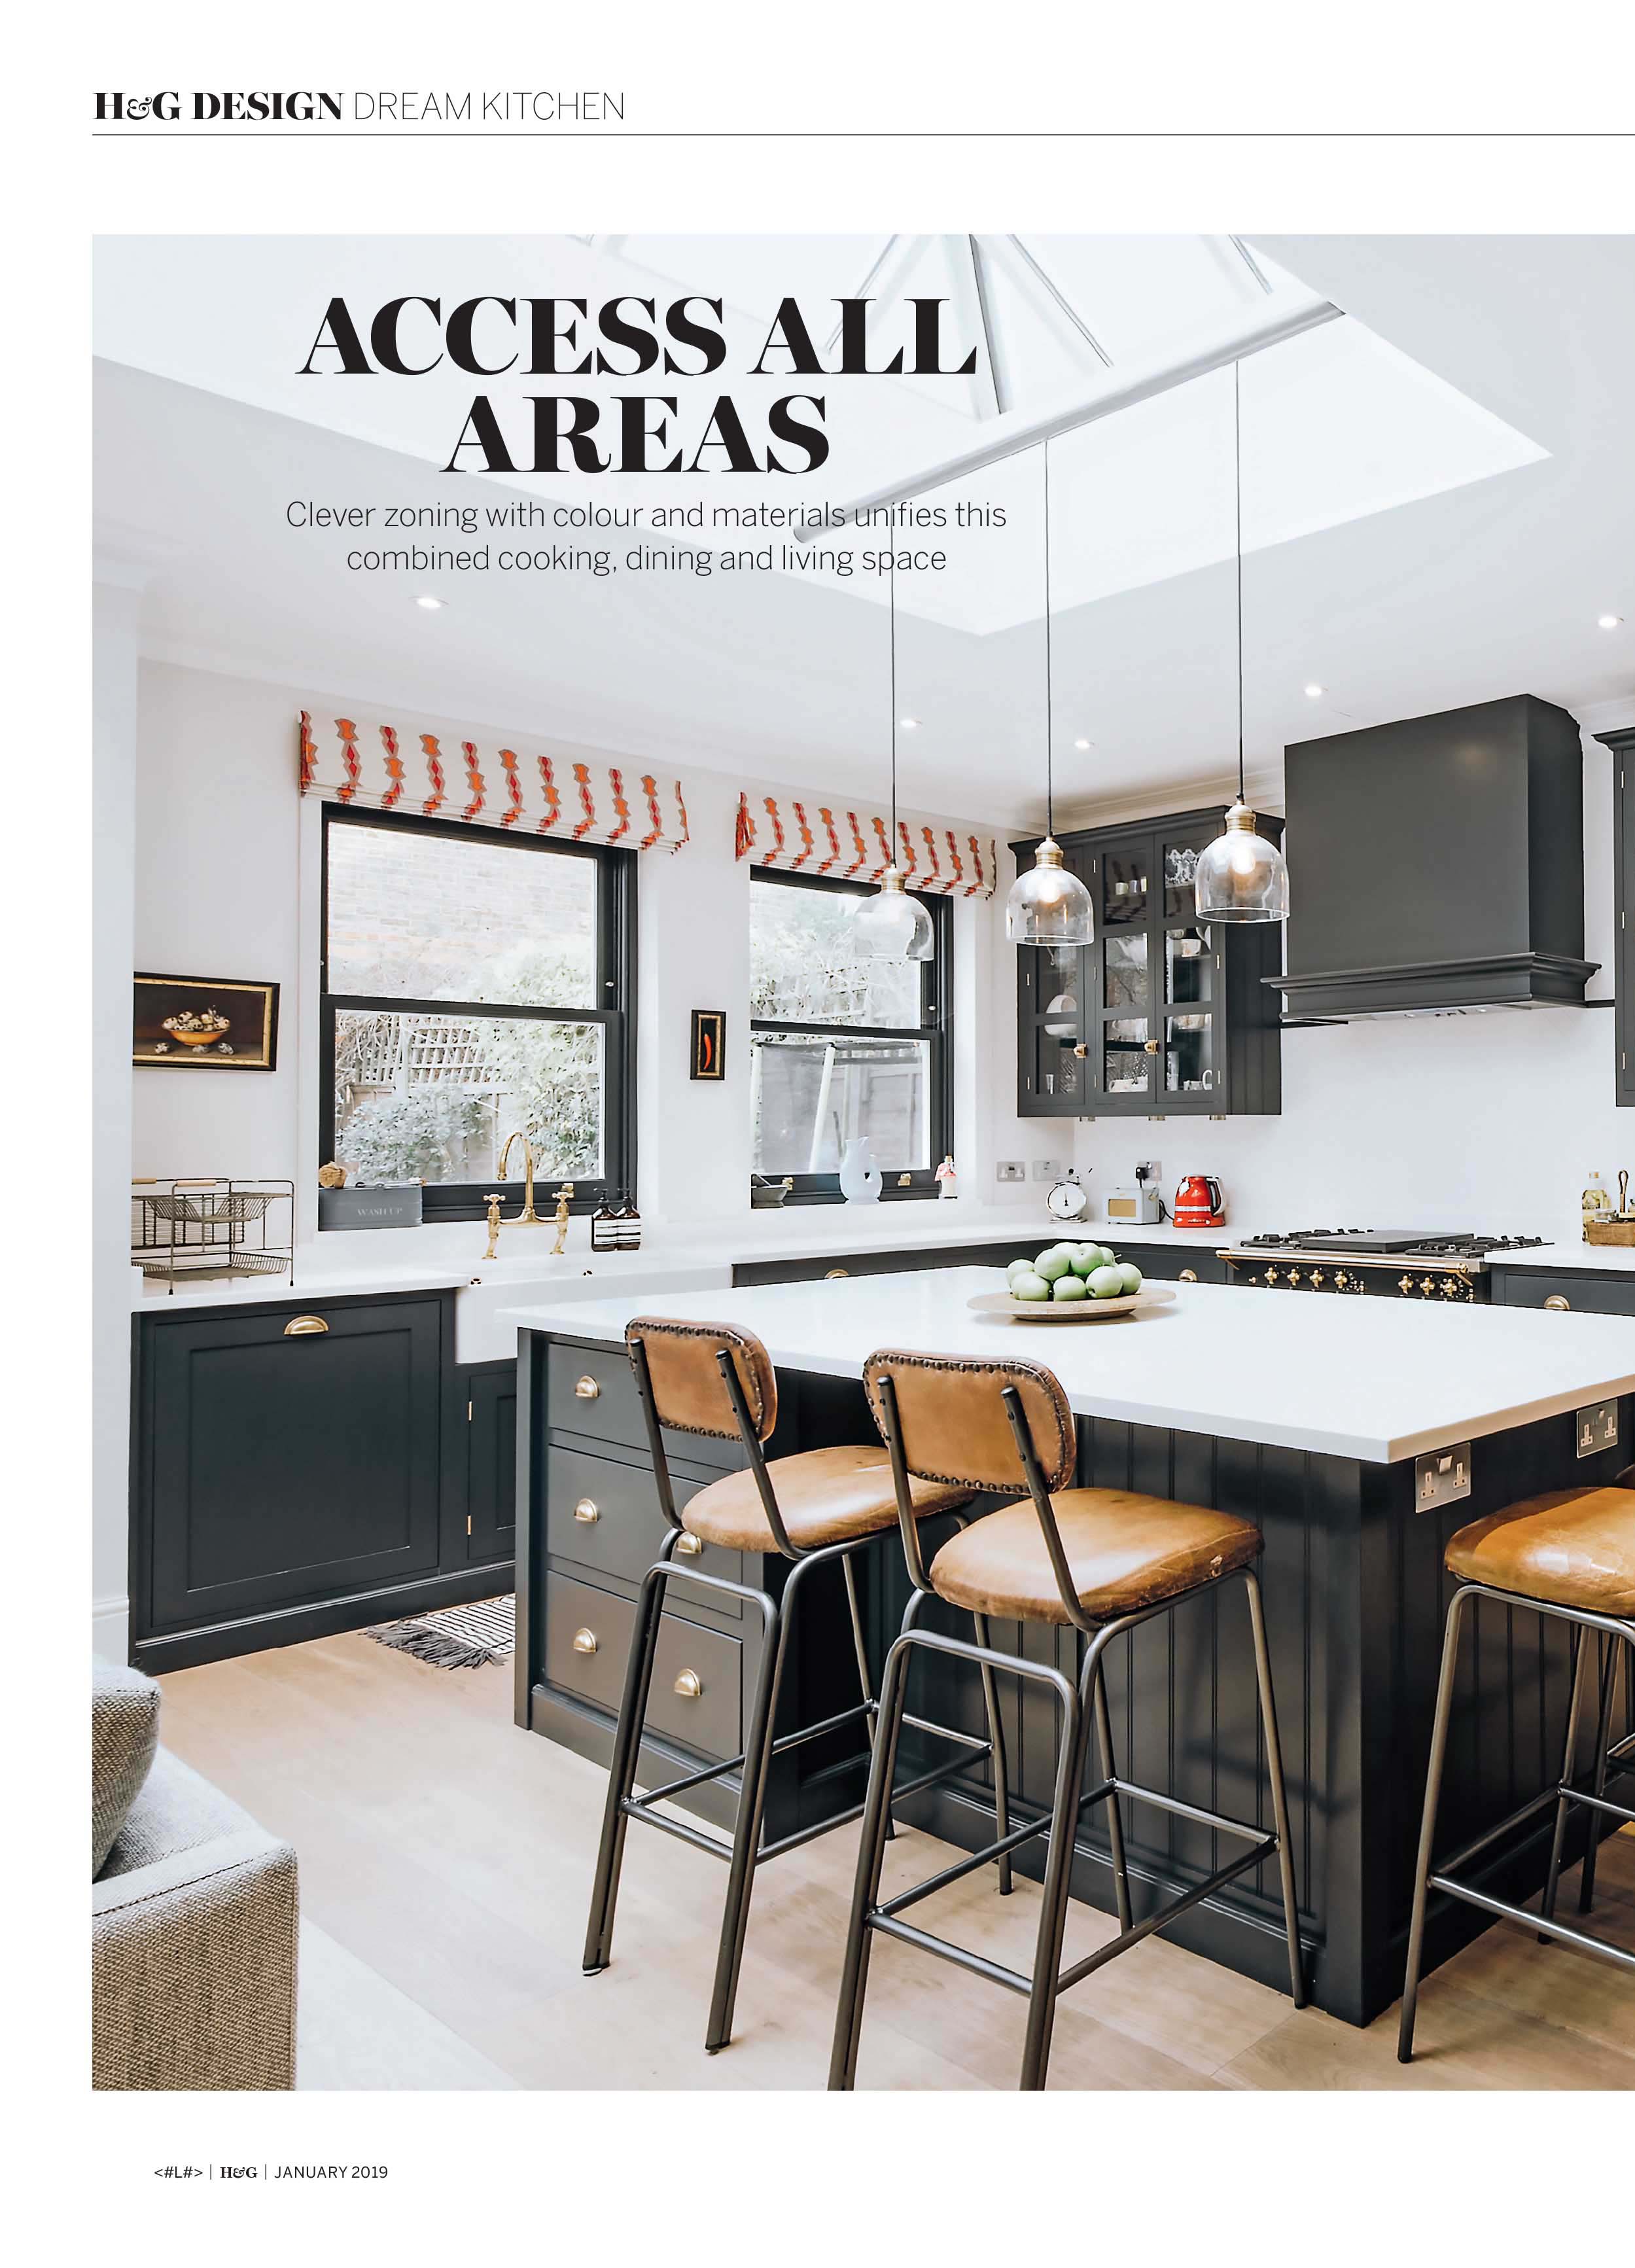 homes-and-gardens-magazine-Jan-2019-dream-kitchen-new-inner1.jpg